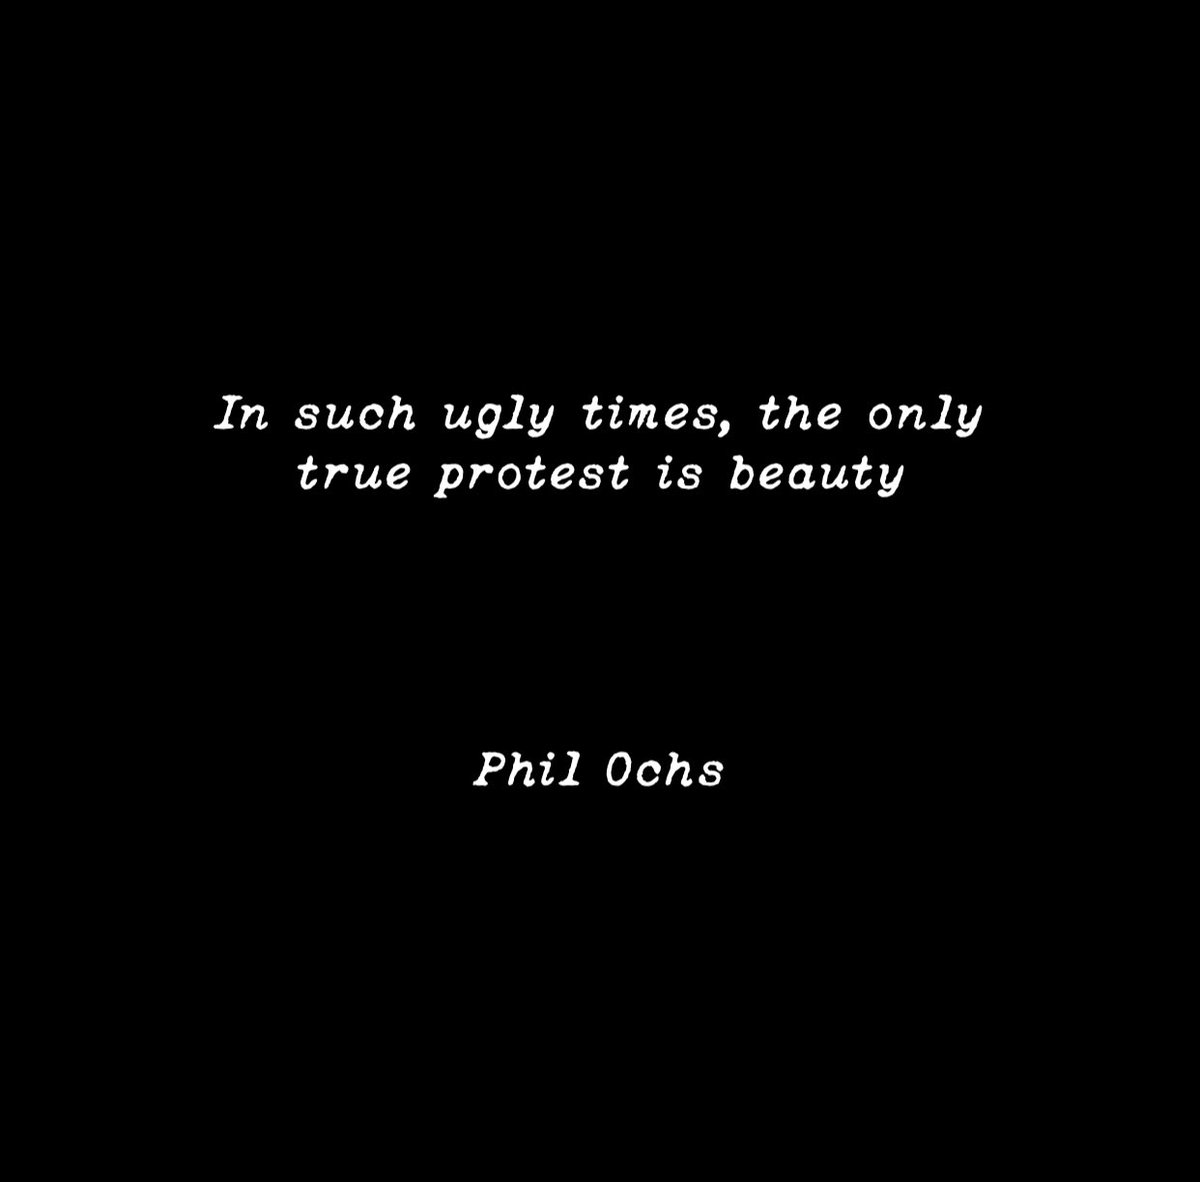 #philochs #quote